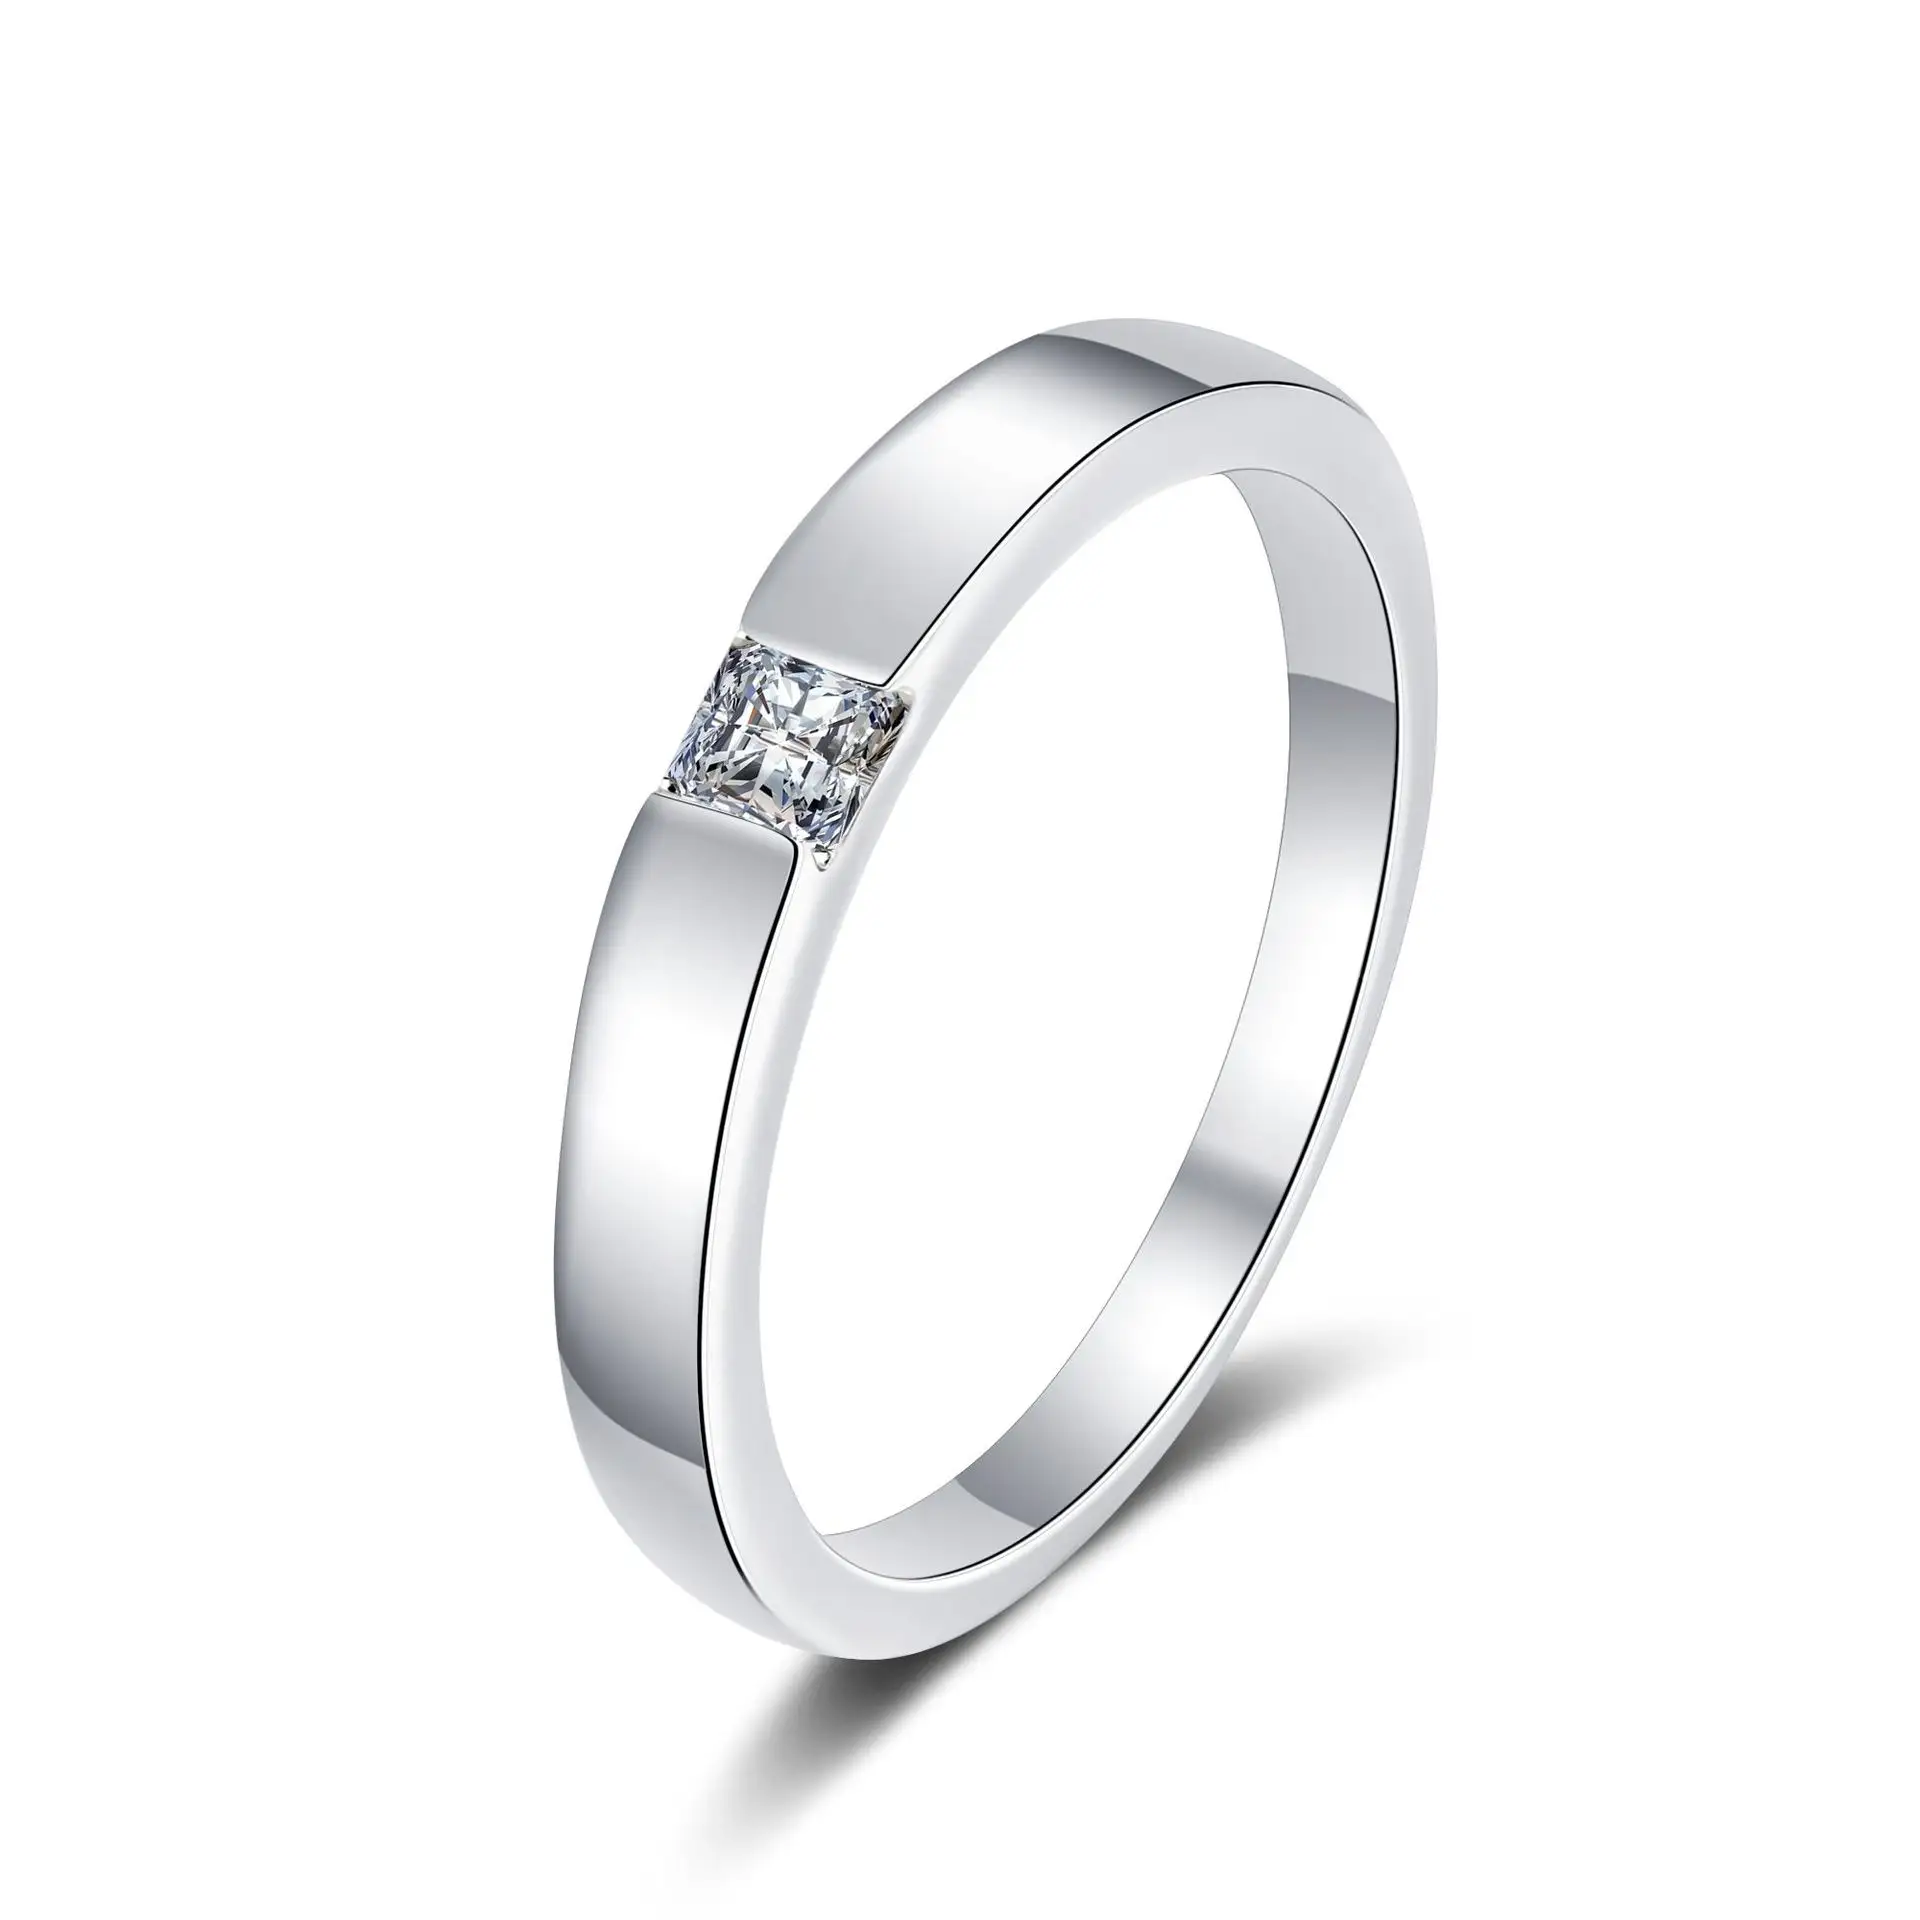 Princess Cut Ring 30 Points Moissanite Diamond Men Unisex Ring 925 Sterling Silver Trendy Women's Geometric 1pc/opp Bag Welcomed